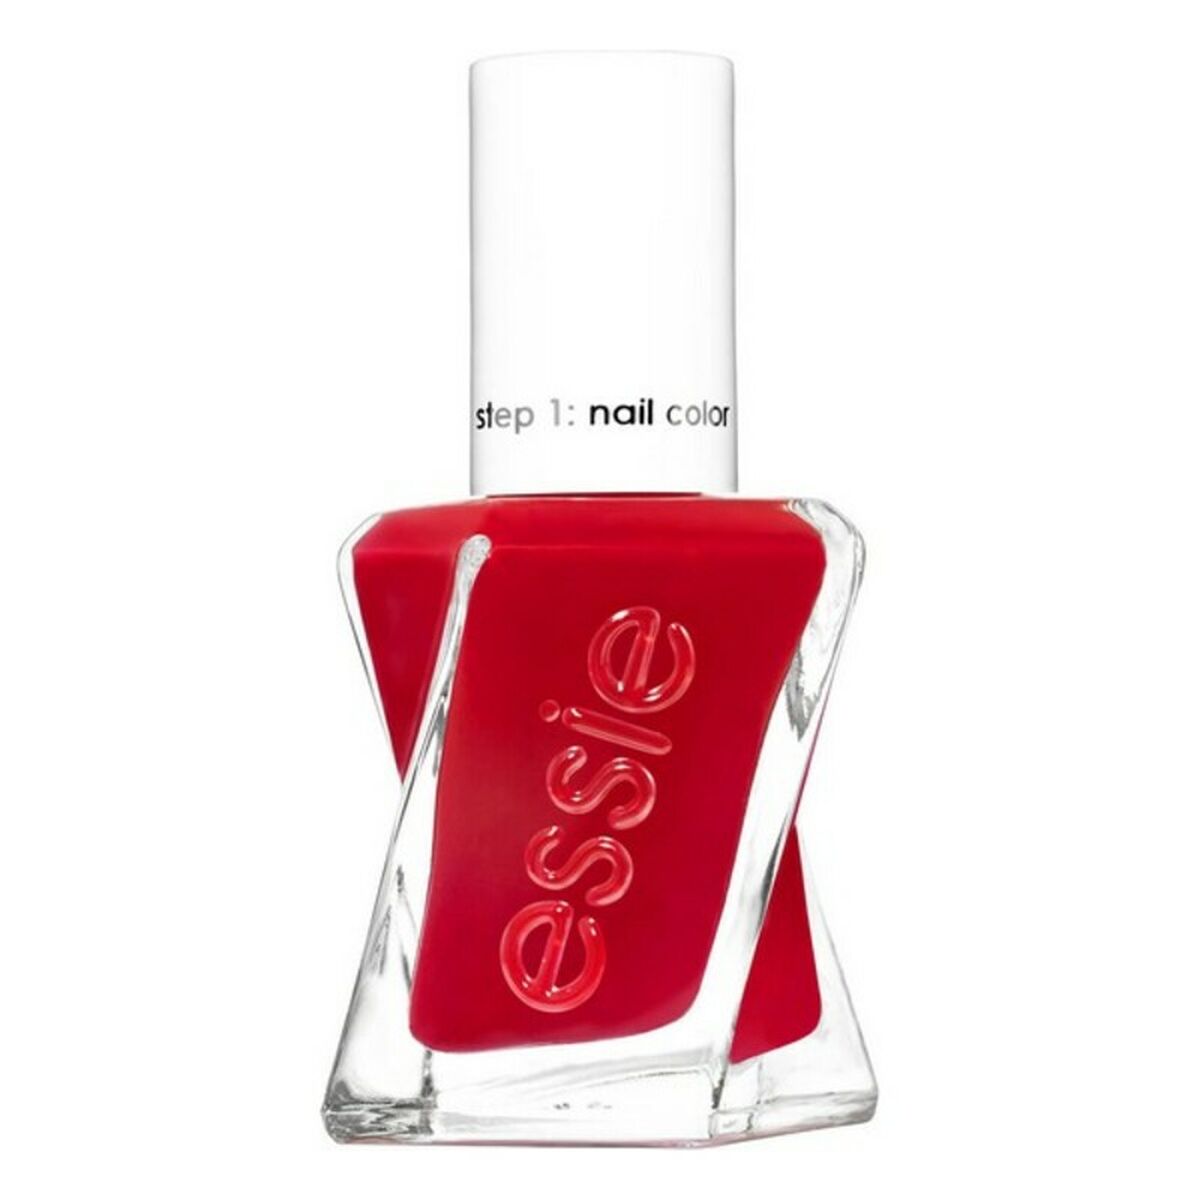 neglelak Couture Essie 510-dame i rød (13,5 ml)